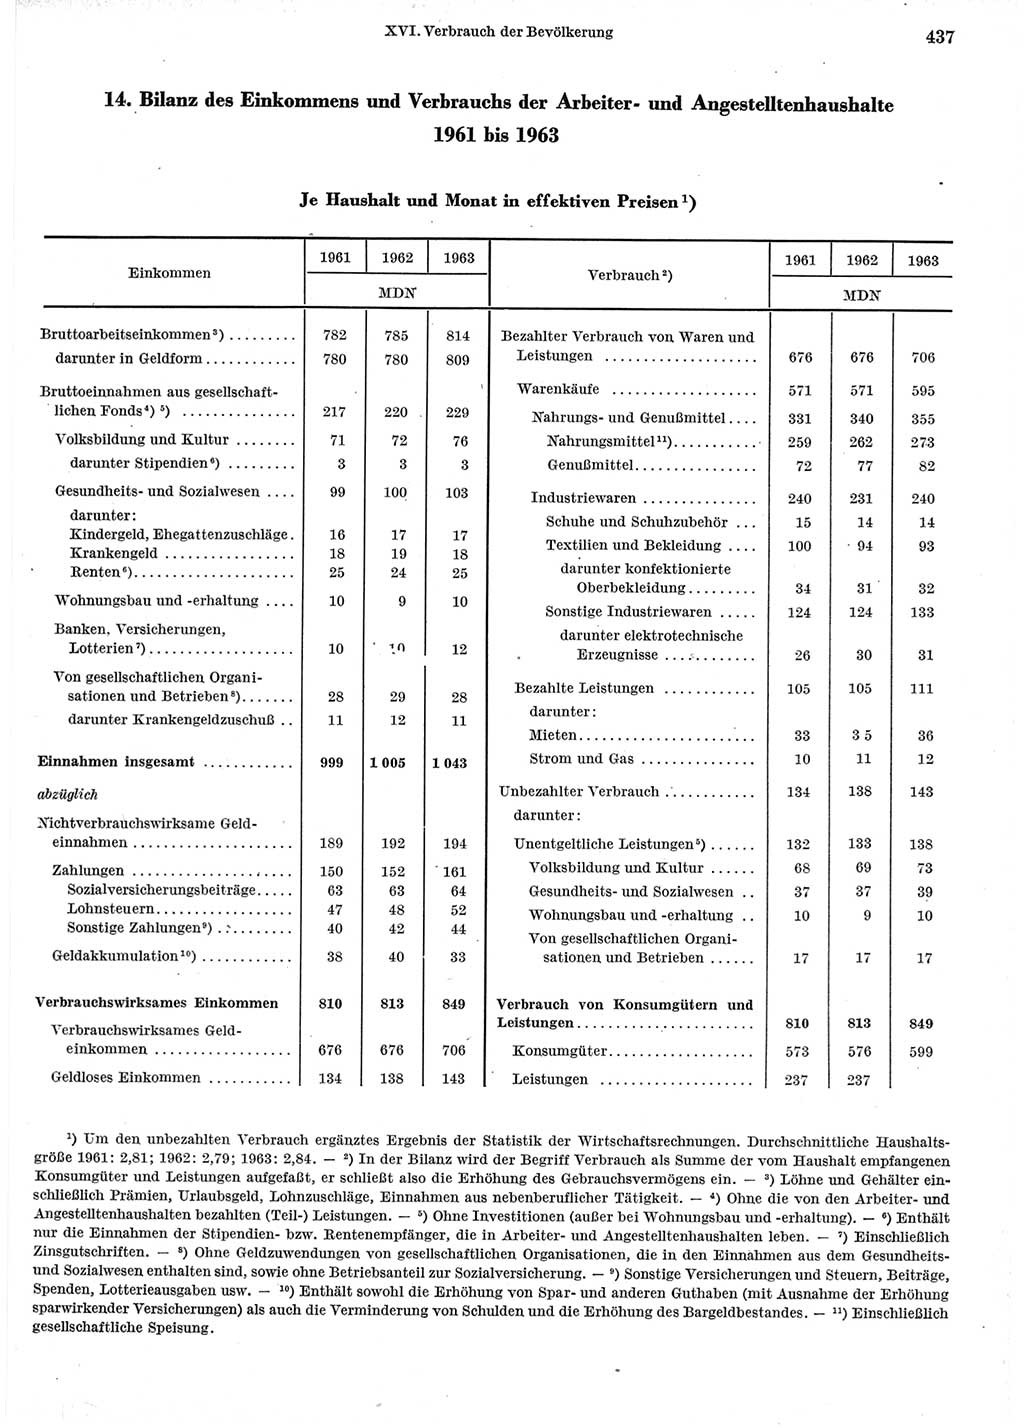 Statistisches Jahrbuch der Deutschen Demokratischen Republik (DDR) 1965, Seite 437 (Stat. Jb. DDR 1965, S. 437)